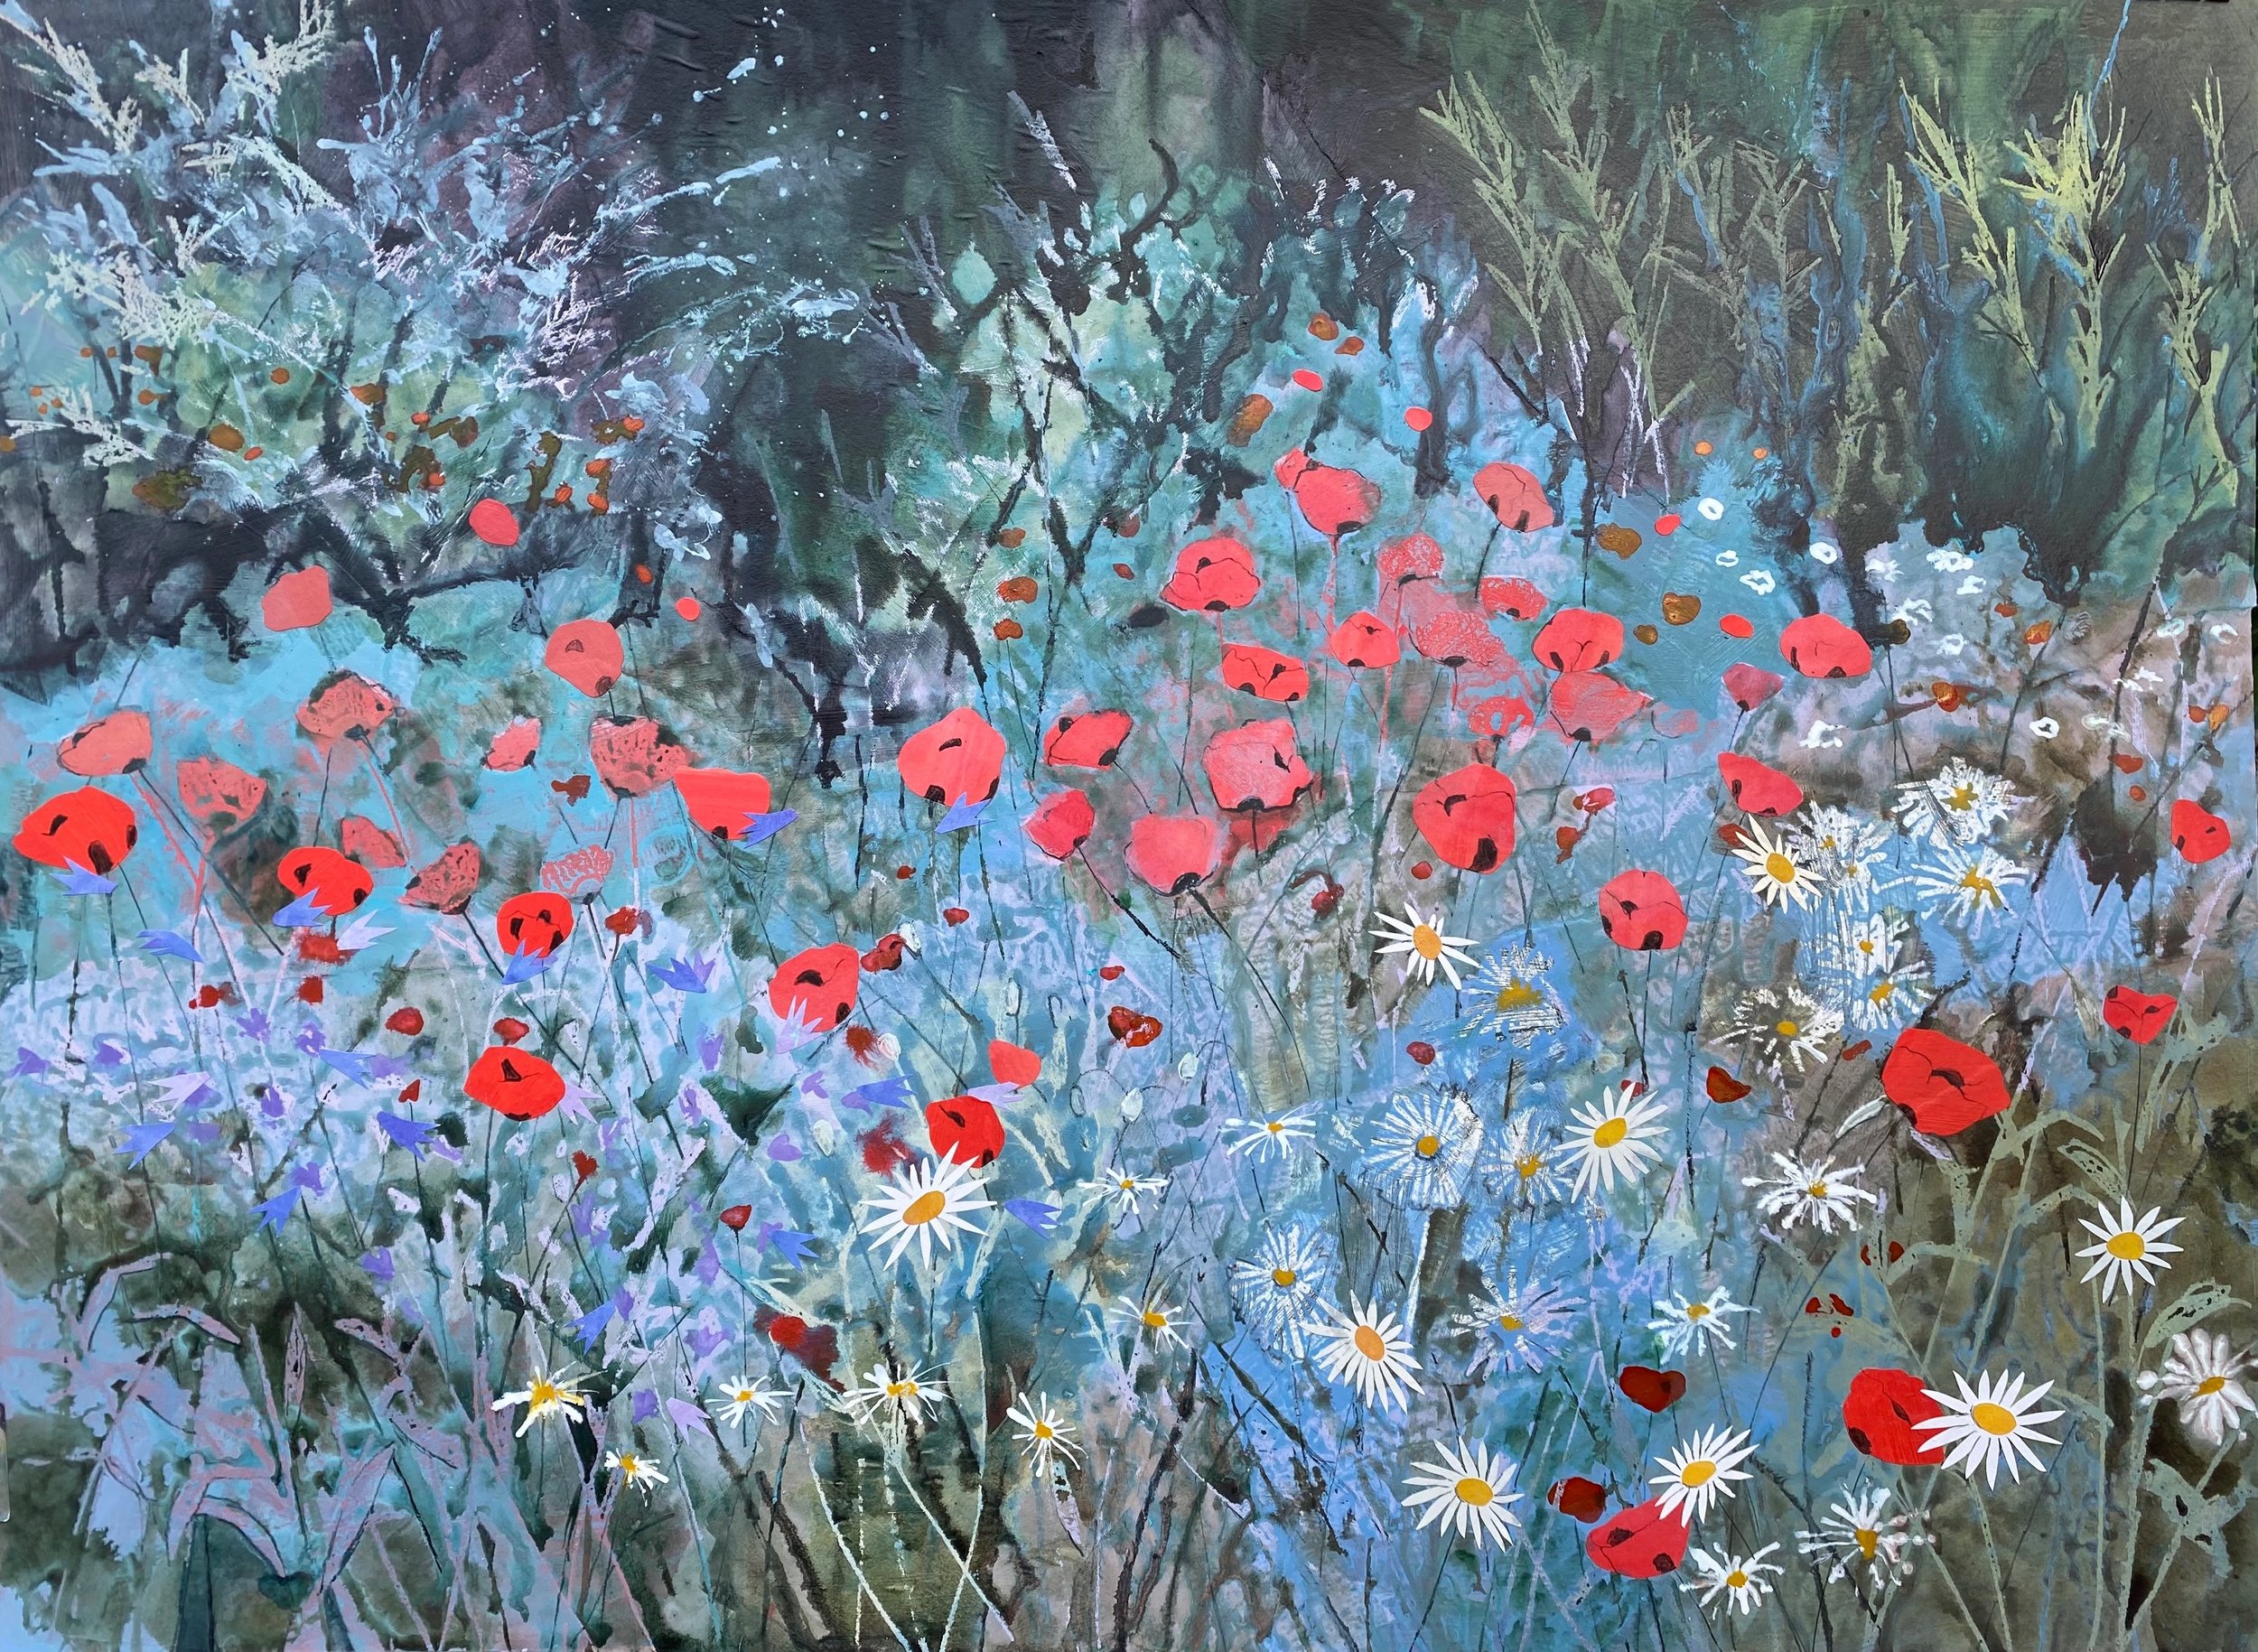 "Black spot poppies, Sissinghurst Gardens"